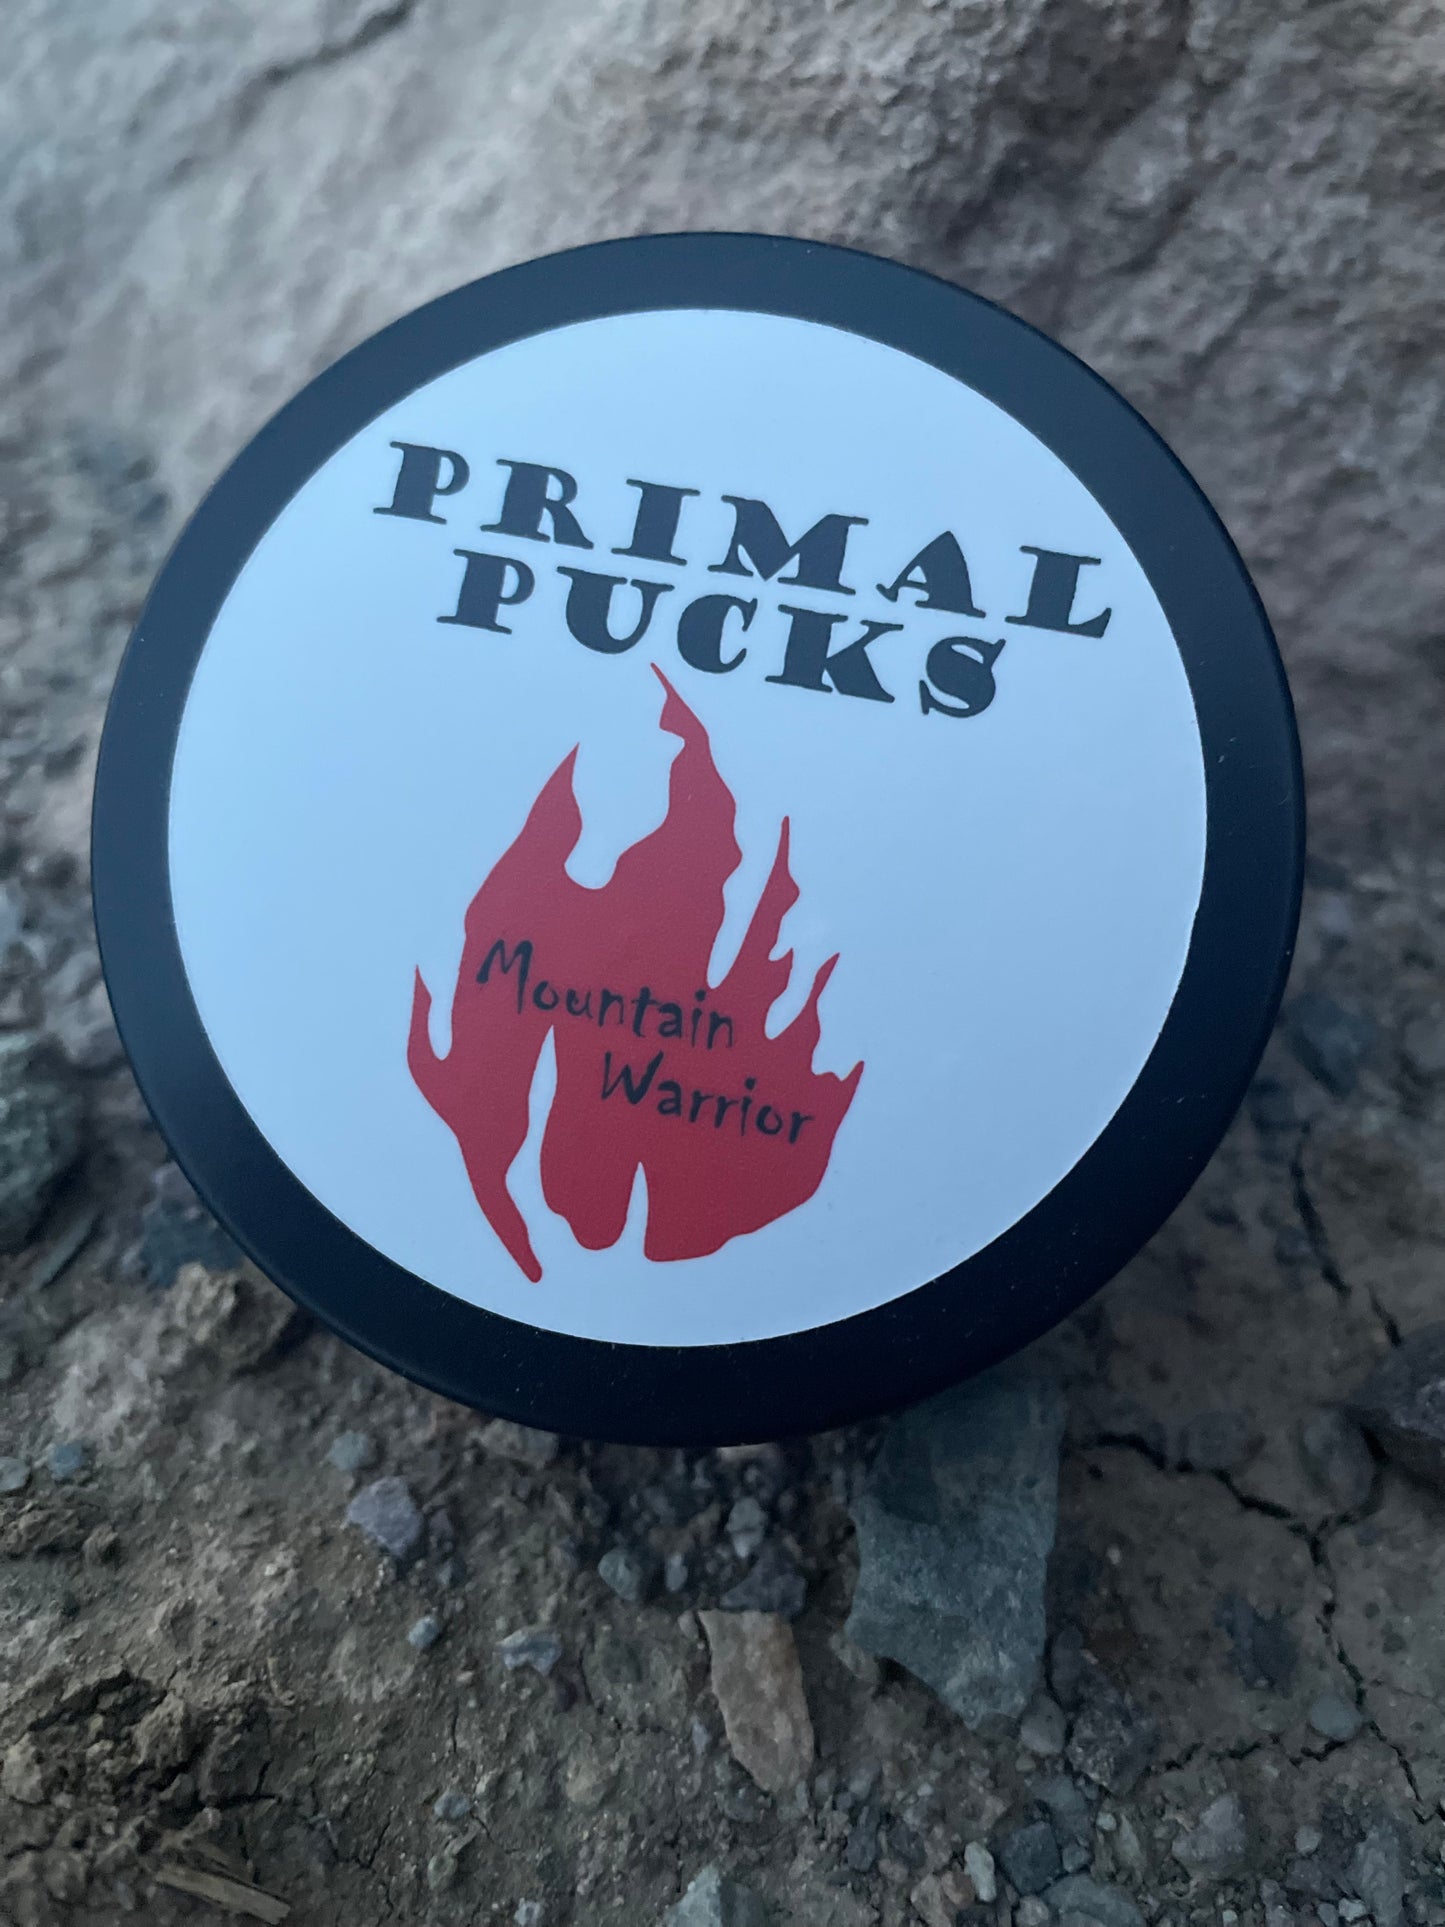 Mountain Warrior Primal Pucks